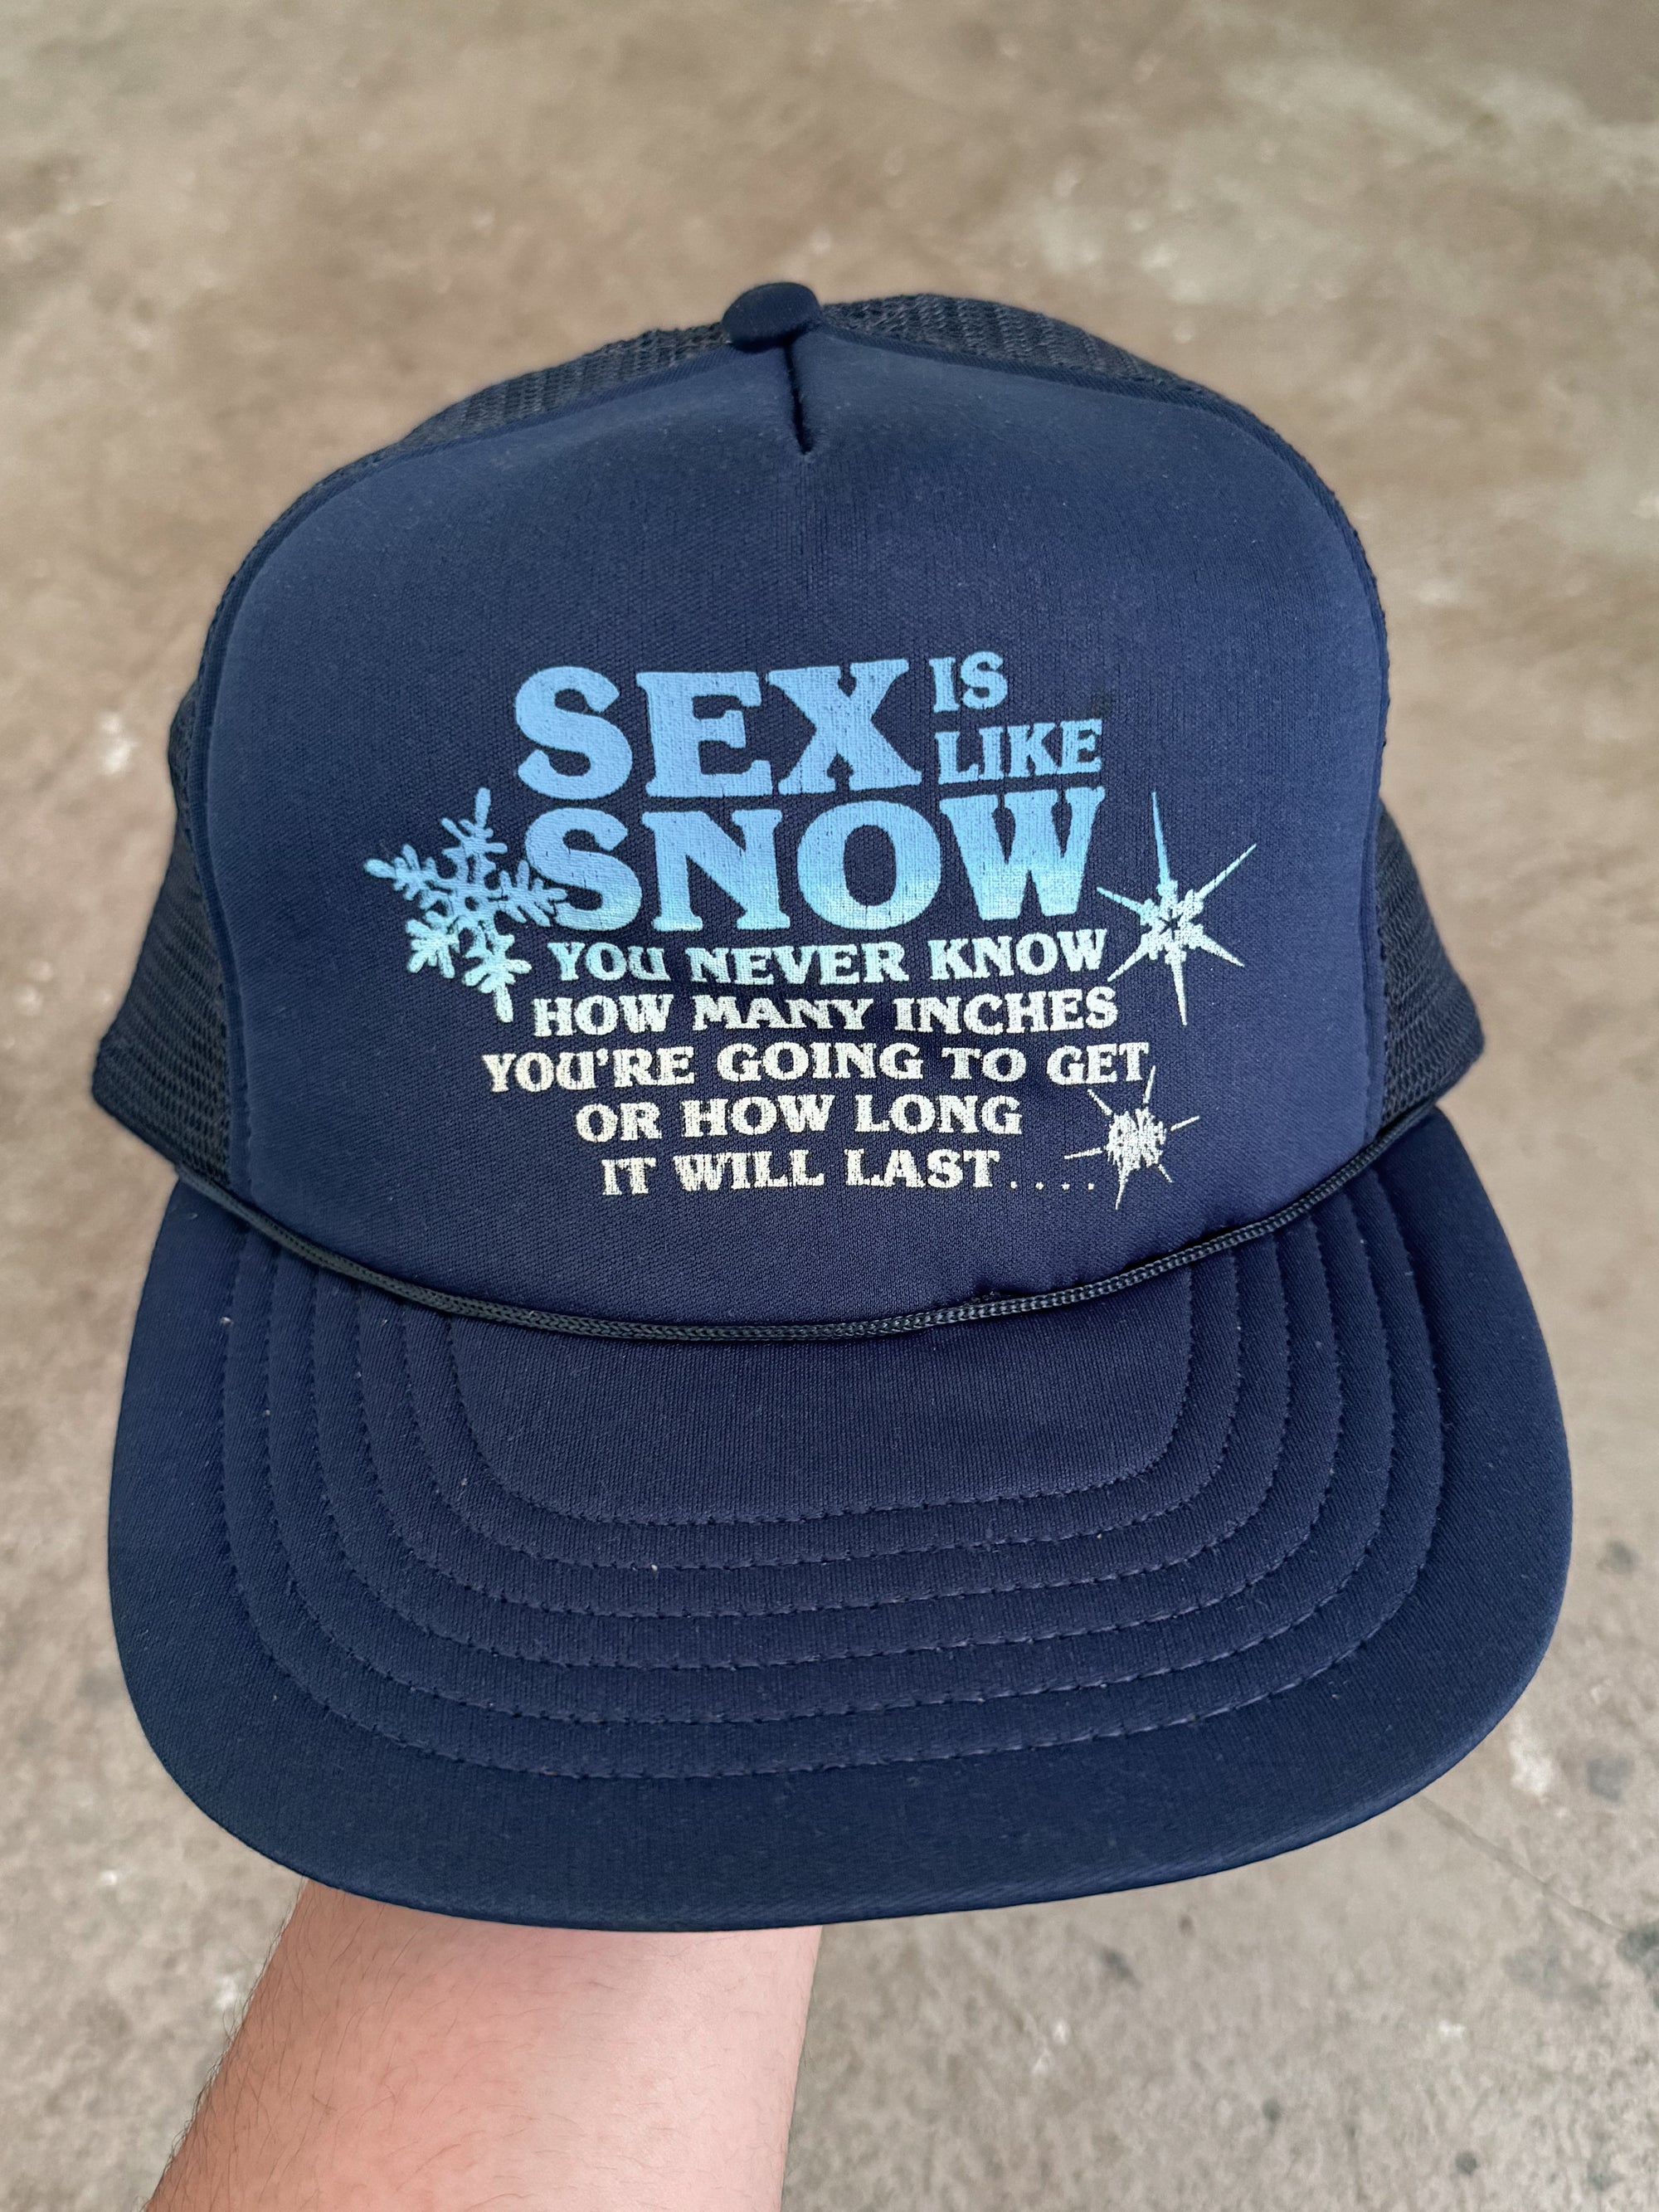 1980s/90s "Sex Is Like Snow" Trucker Hat